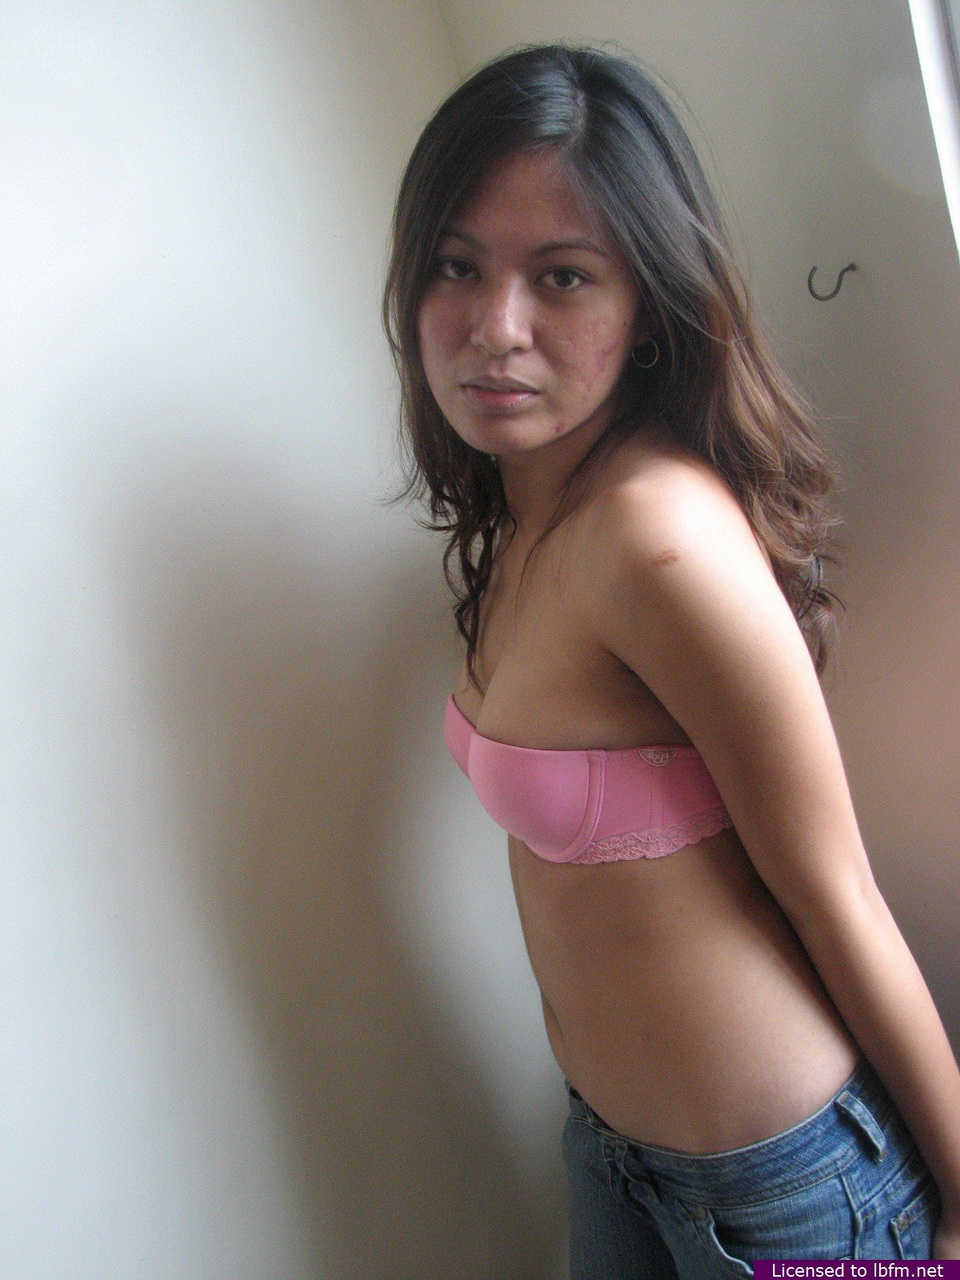 Asian teen from a remote farming village poses nude for easy money foto pornográfica #428944098 | LBFM Pics, Asian, pornografia móvel